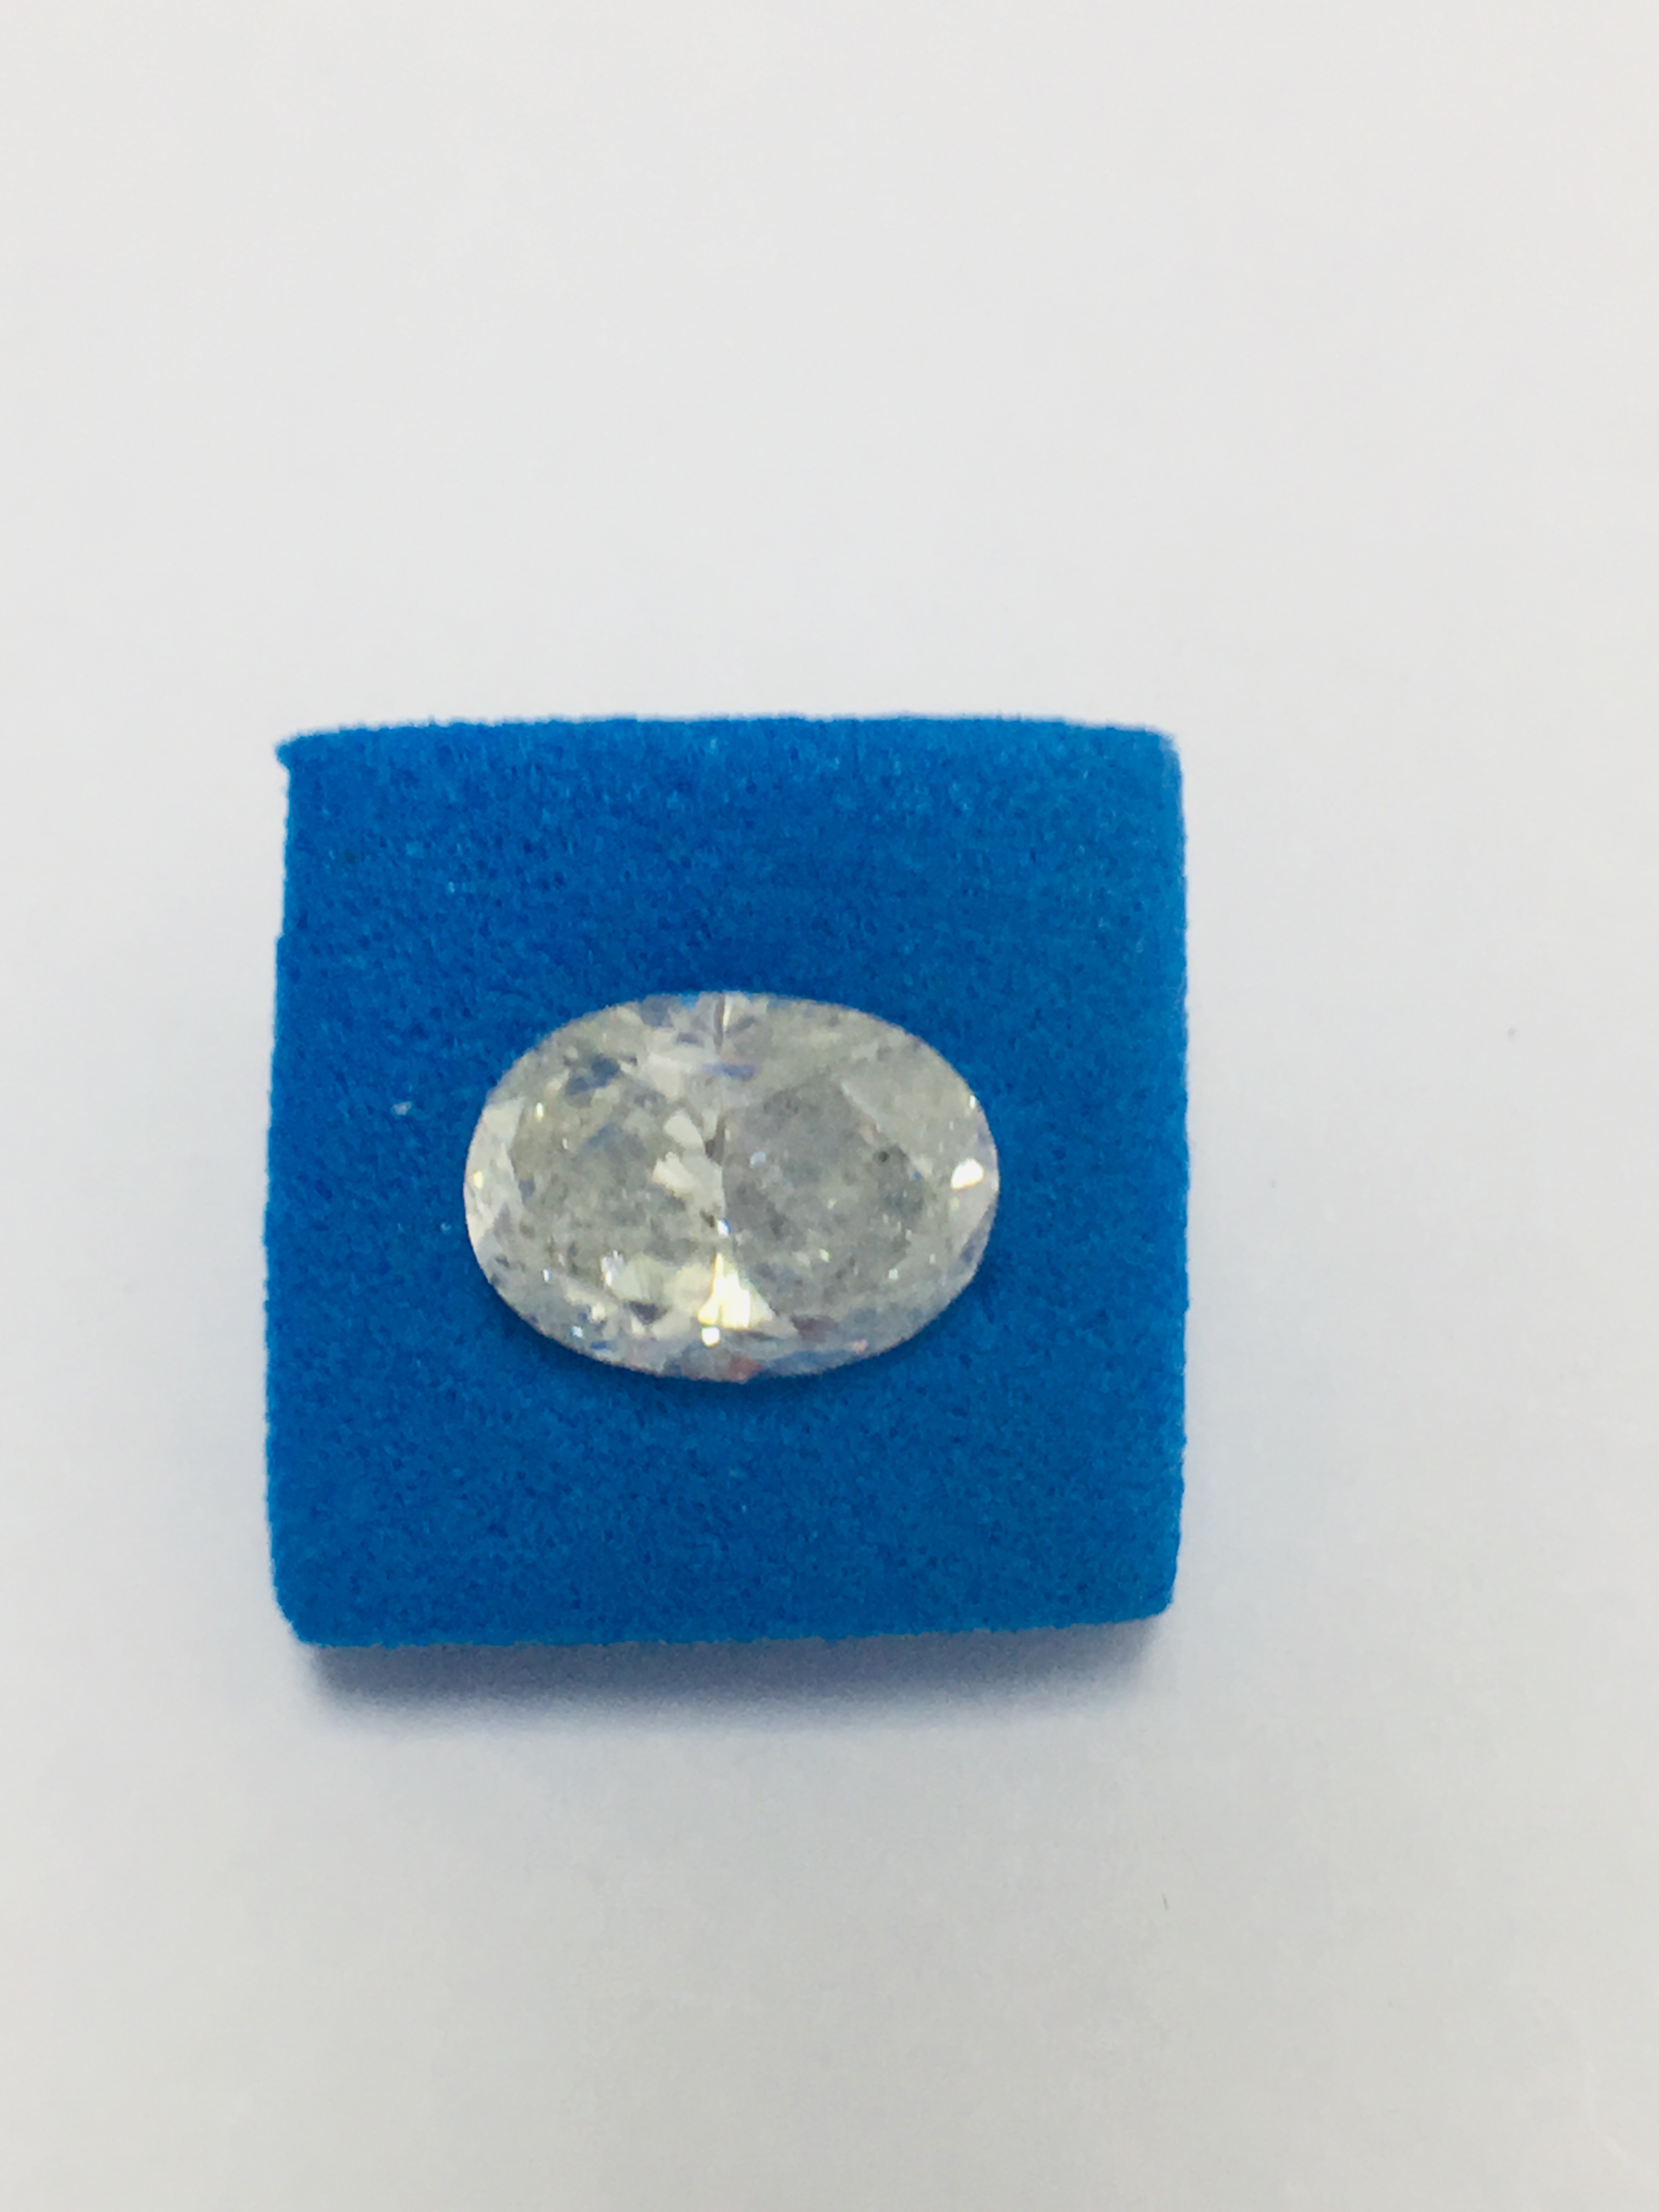 1.61t Natural oval Cut diamond colour,i2 clarity,diamond is tested as clarity enhanced